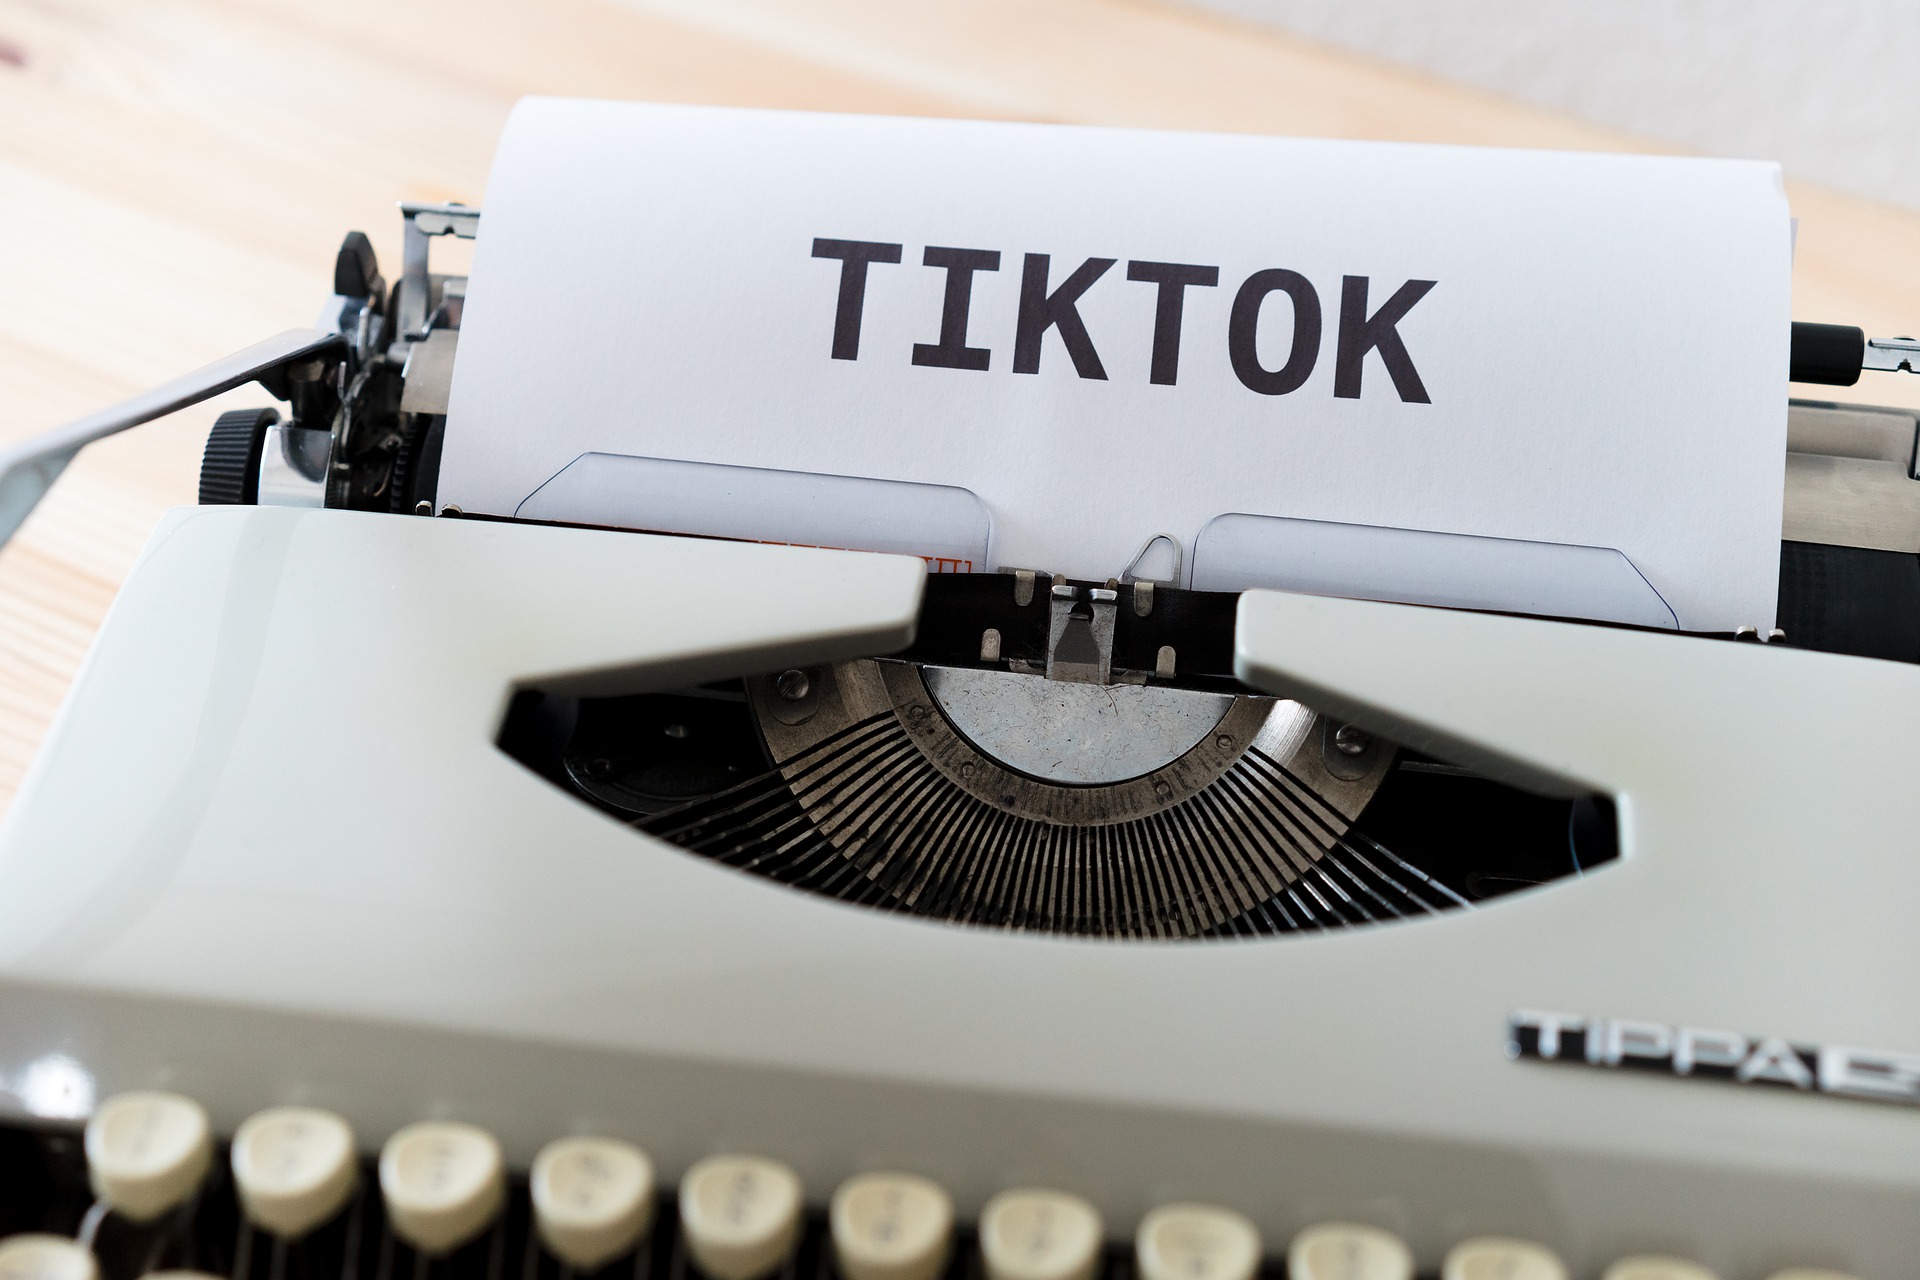 В работе приложения TikTok произошёл сбой